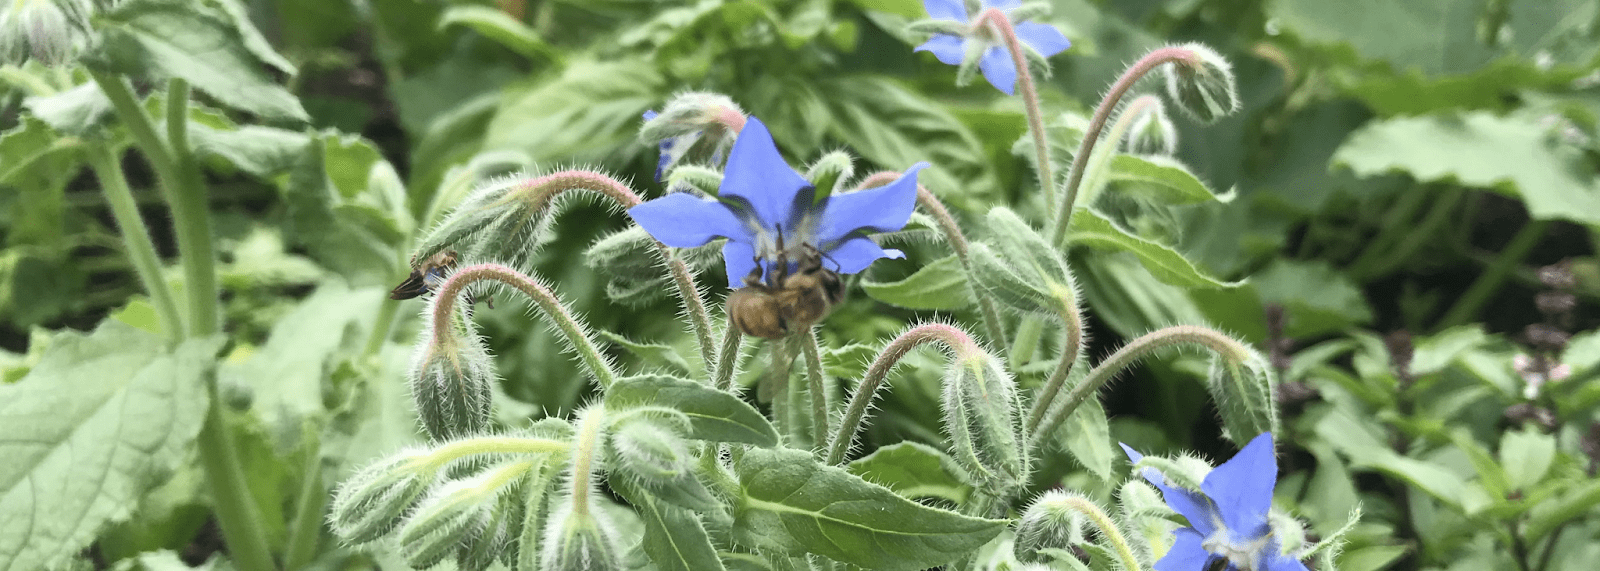 縮小的淺紫藍色花朵頁首寬度圖片。蜜蜂是幾乎可見的。